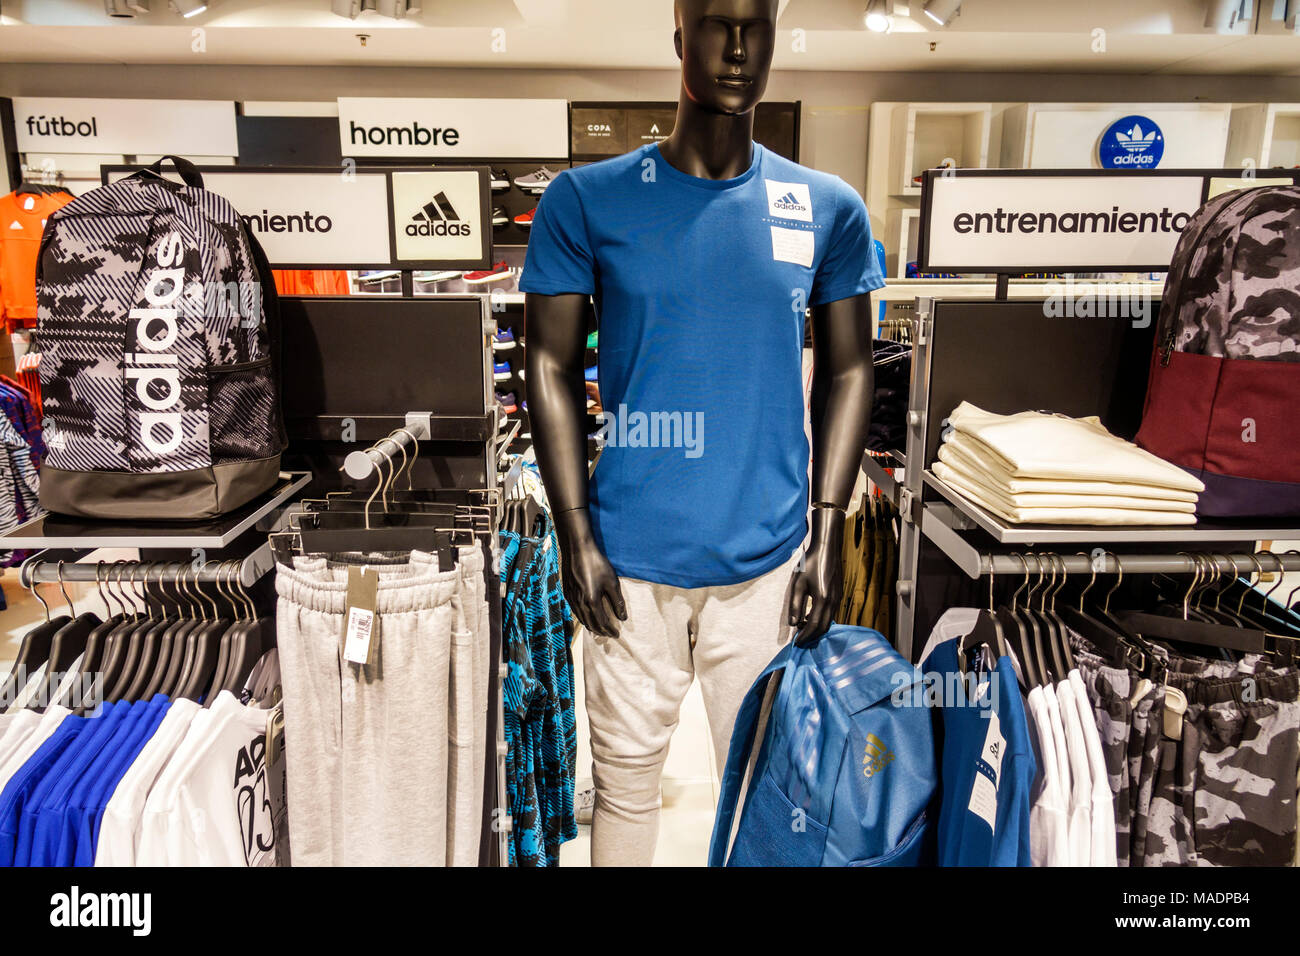 Adidas Shopping Shop, GET 50% OFF, dh-o.com